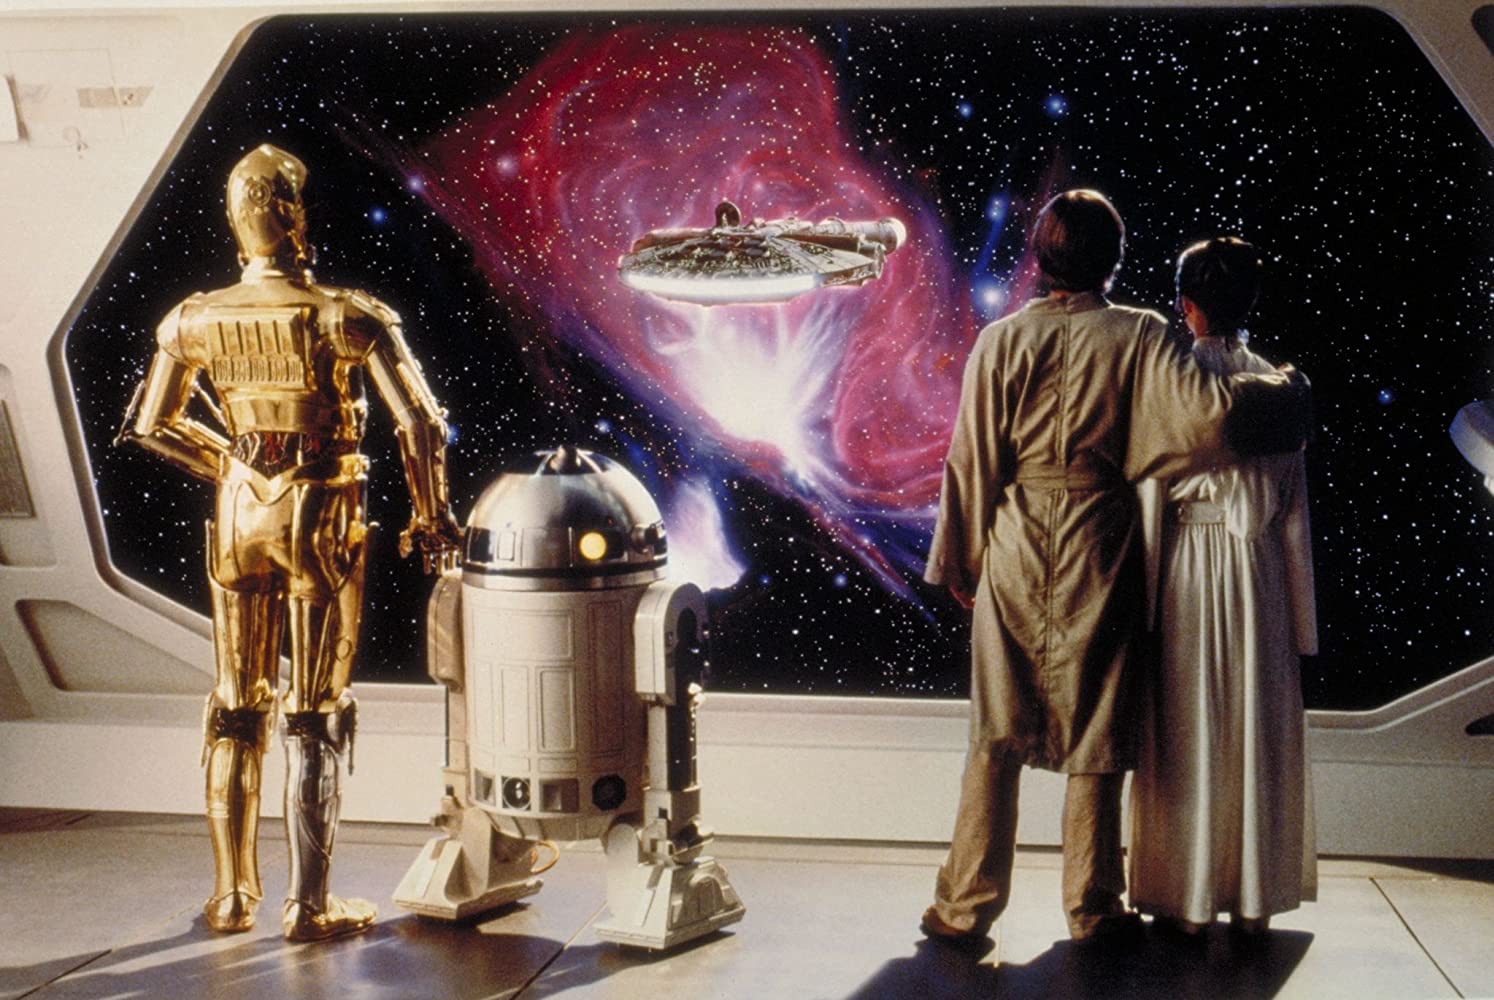 Os 10 momentos mais marcantes da franquia 'Star Wars' - CinePOP